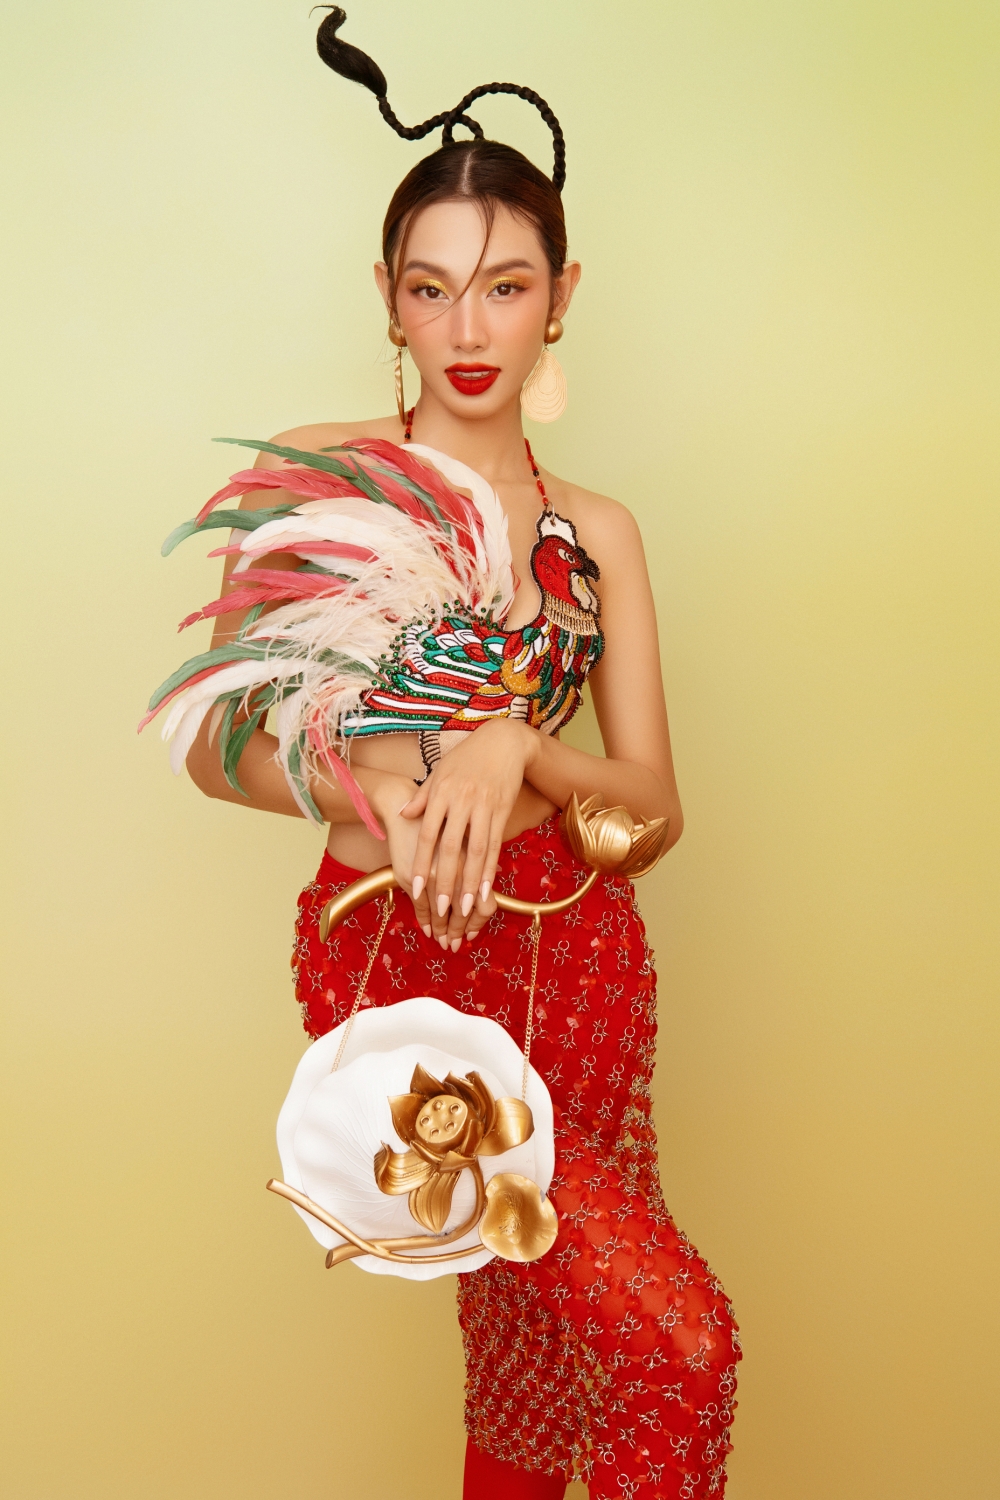 Hoa hậu Thùy Tiên diện yếm đào, đội nón quai thao trong bộ ảnh đón Tết